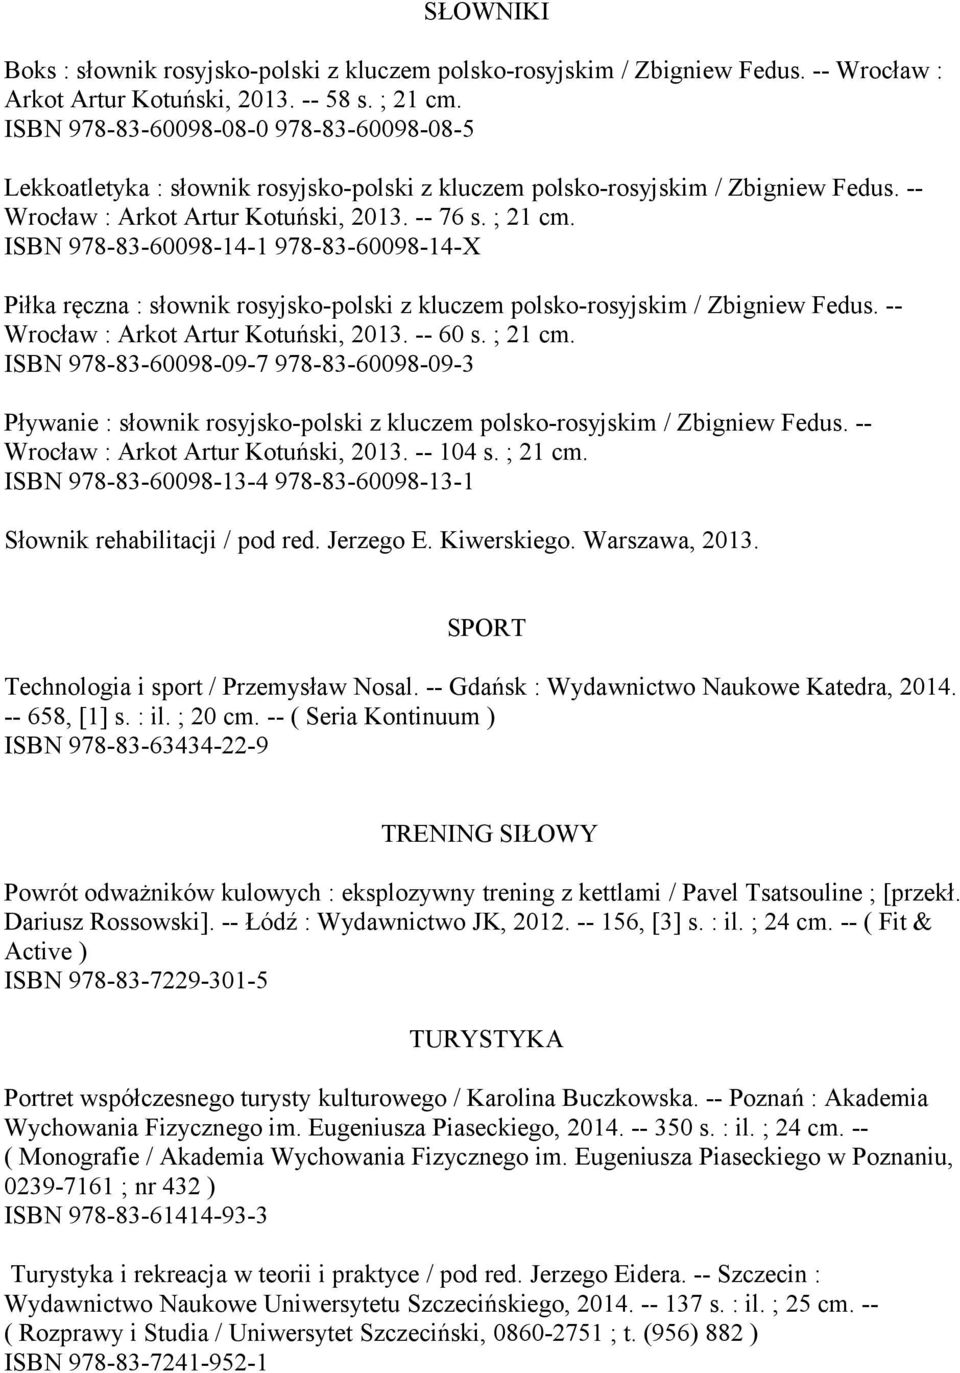 ISBN 978-83-60098-14-1 978-83-60098-14-X Piłka ręczna : słownik rosyjsko-polski z kluczem polsko-rosyjskim / Zbigniew Fedus. -- Wrocław : Arkot Artur Kotuński, 2013. -- 60 s. ; 21 cm.